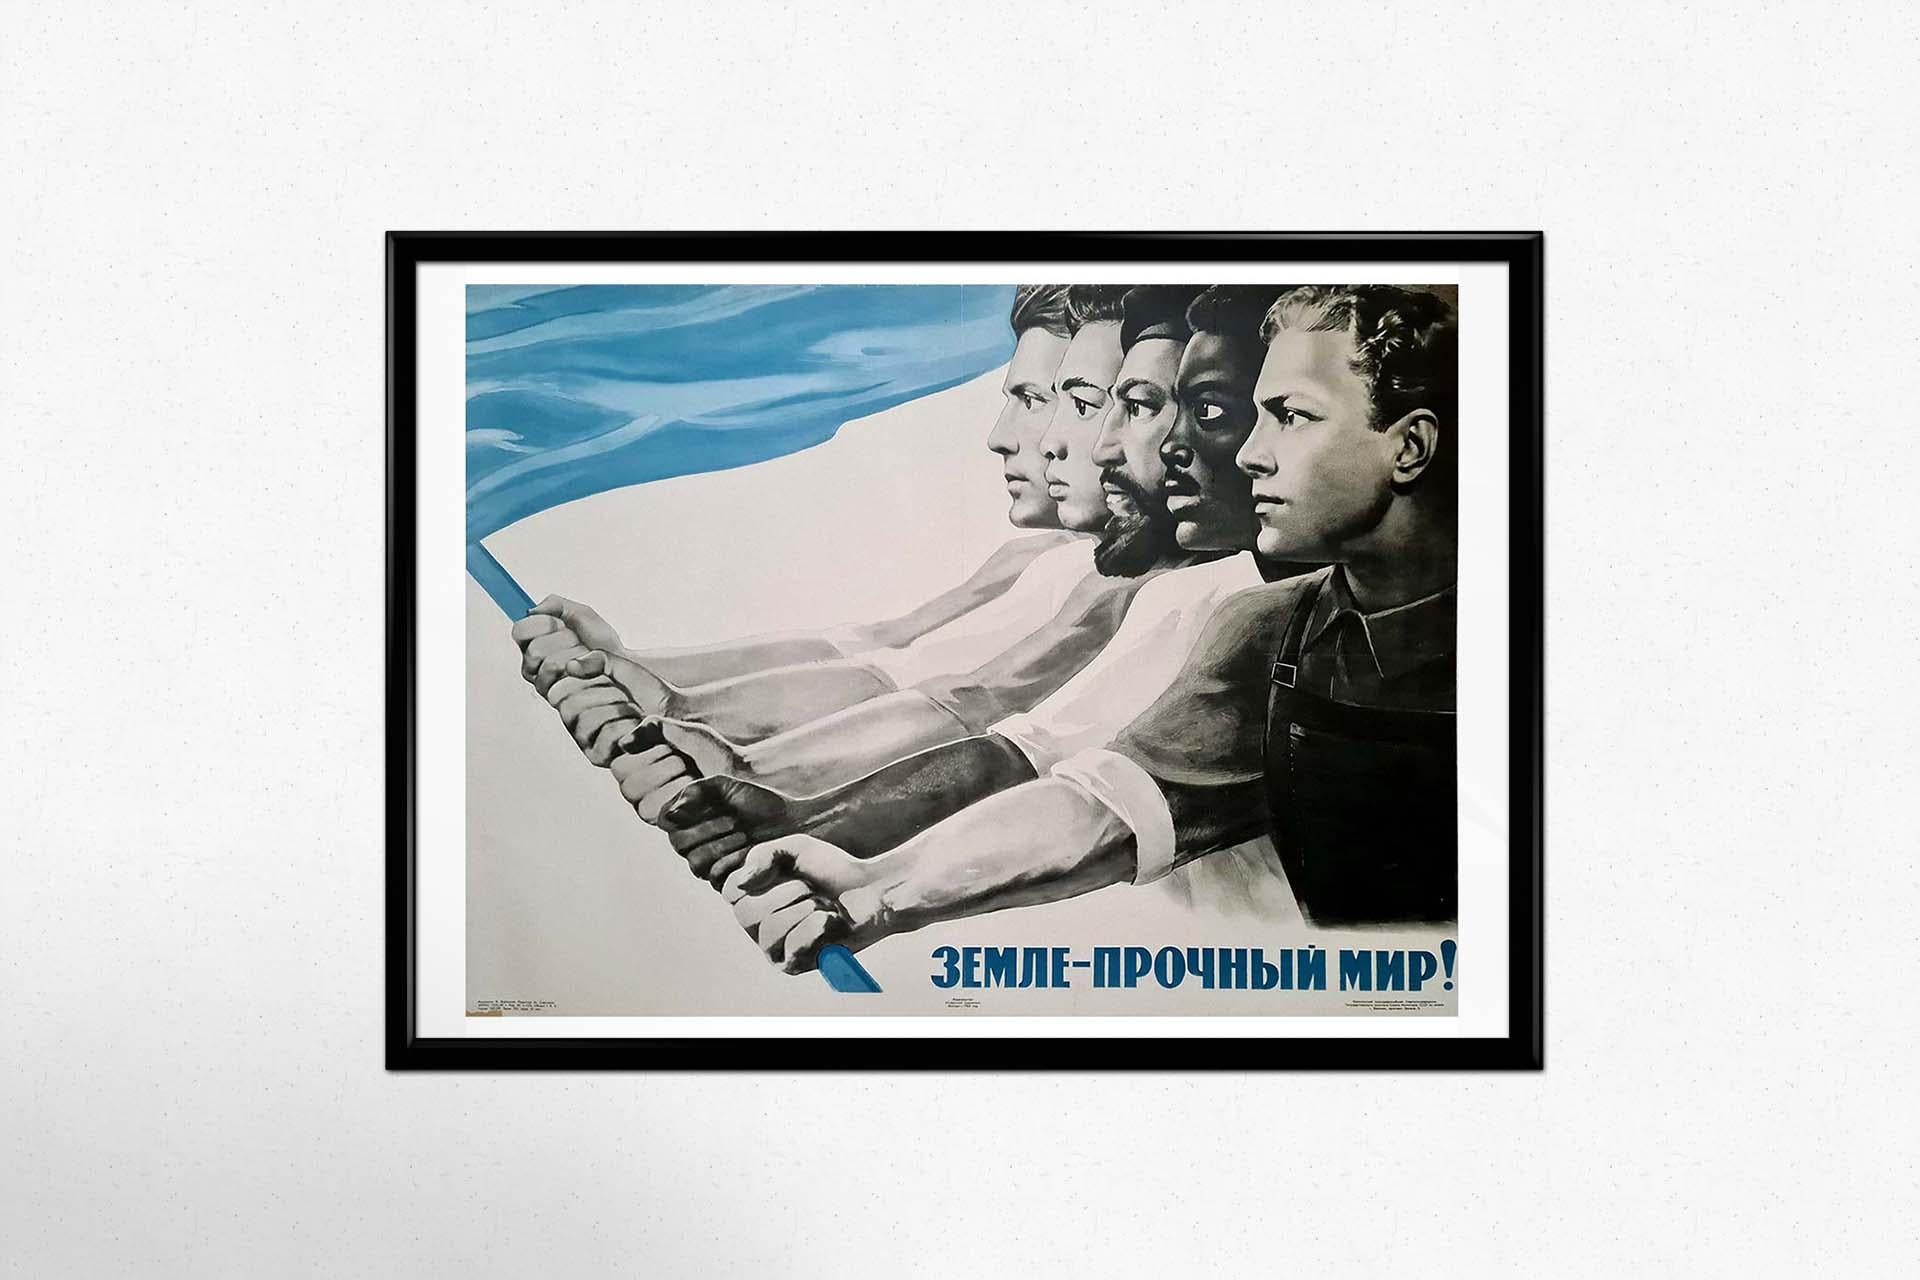 En 1965, l'artiste soviétique Victor Koretzky a créé une affiche de propagande convaincante intitulée 